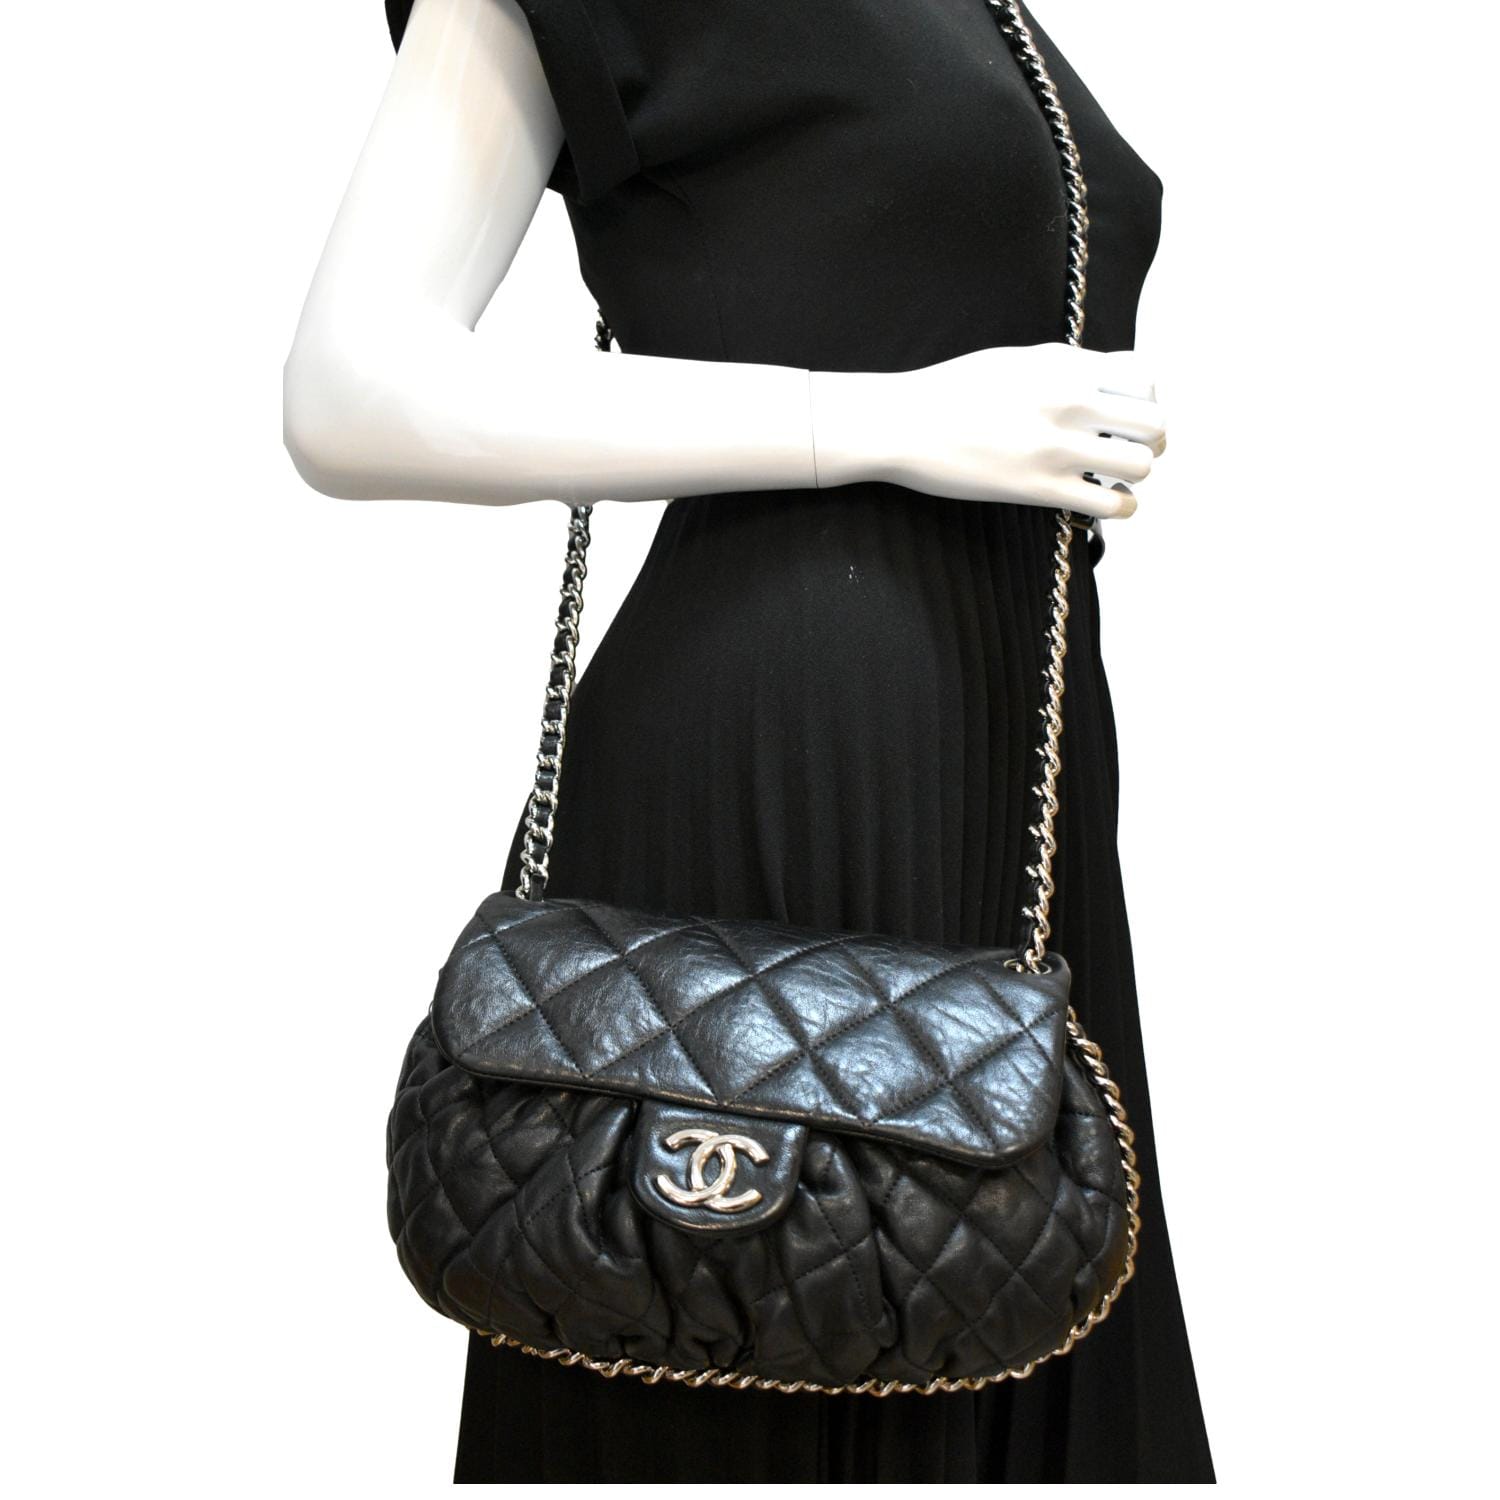 Download Handbag Black Chanel Free Transparent Image HQ HQ PNG Image   FreePNGImg